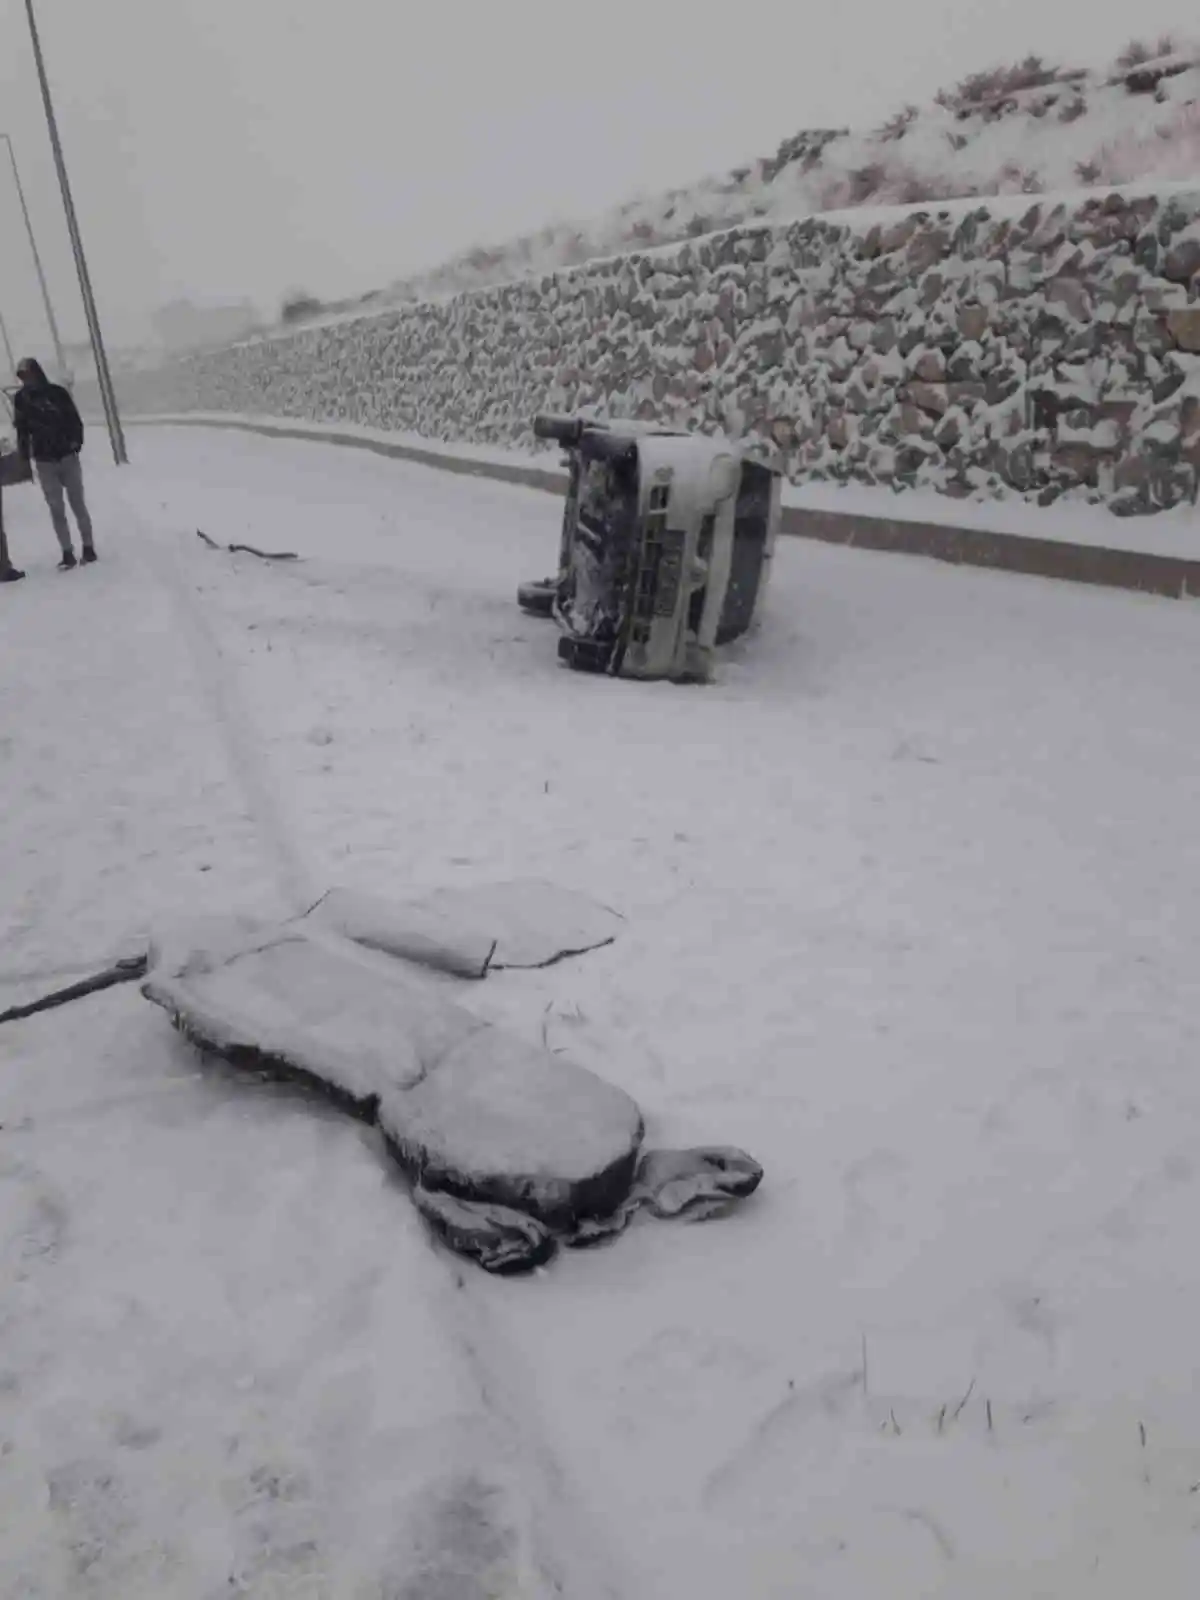 Bitlis’te trafik kazası: 2 yaralı
